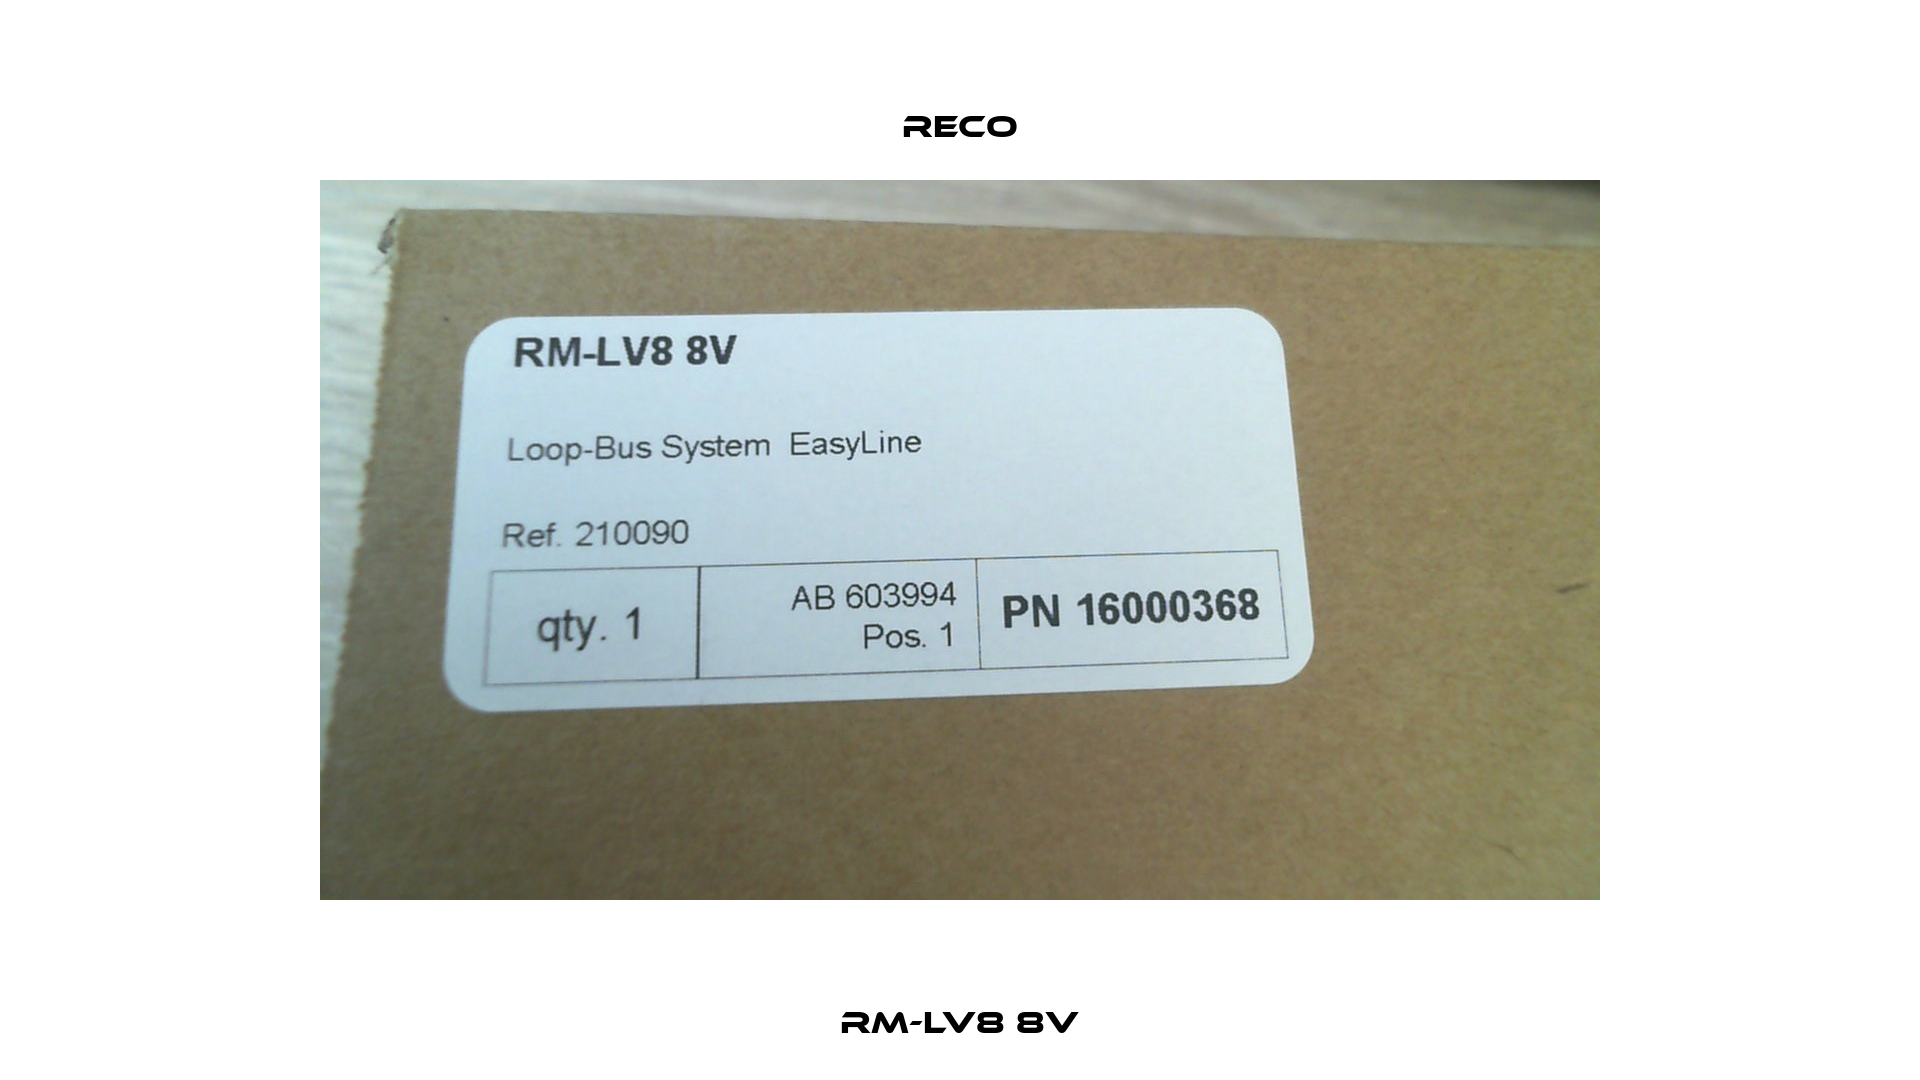 RM-LV8 8V Reco